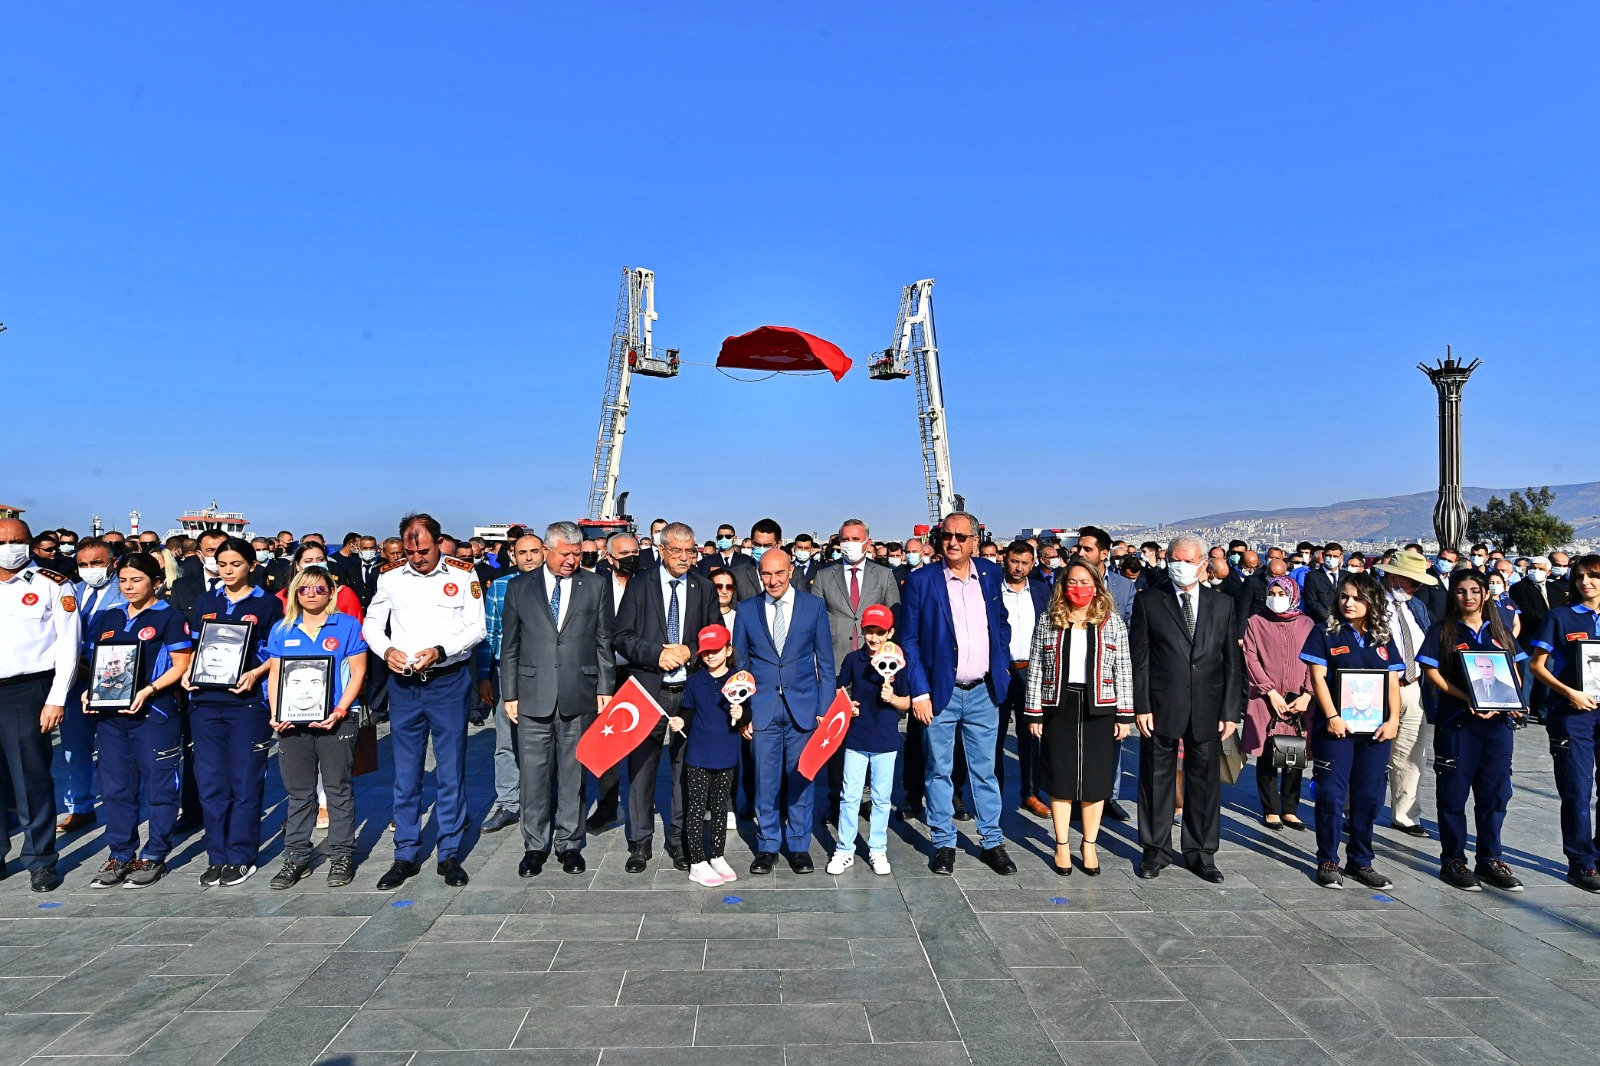 Başkan Soyer İtfaiye Haftası kapsamındaki törende konuştu: “Hem İzmir’e hem de ülkemize umut olmayı başardık”